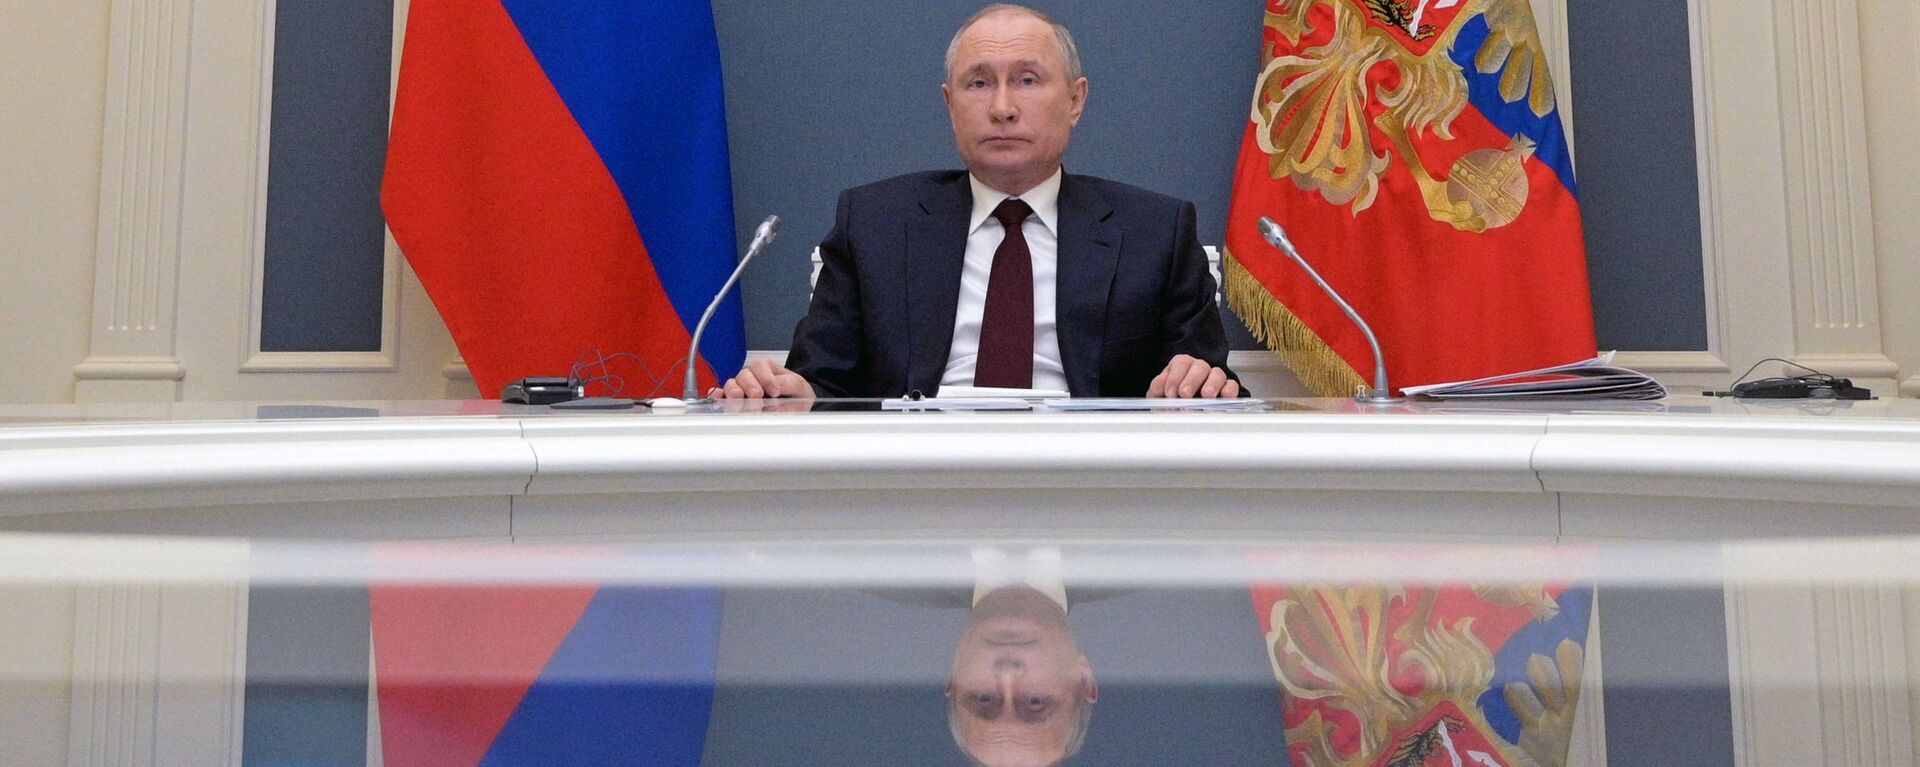 Tổng thống Nga Vladimir Putin tại Hội nghị thượng đỉnh về khí hậu theo điịnh dạng hội thào video. - Sputnik Việt Nam, 1920, 22.04.2021